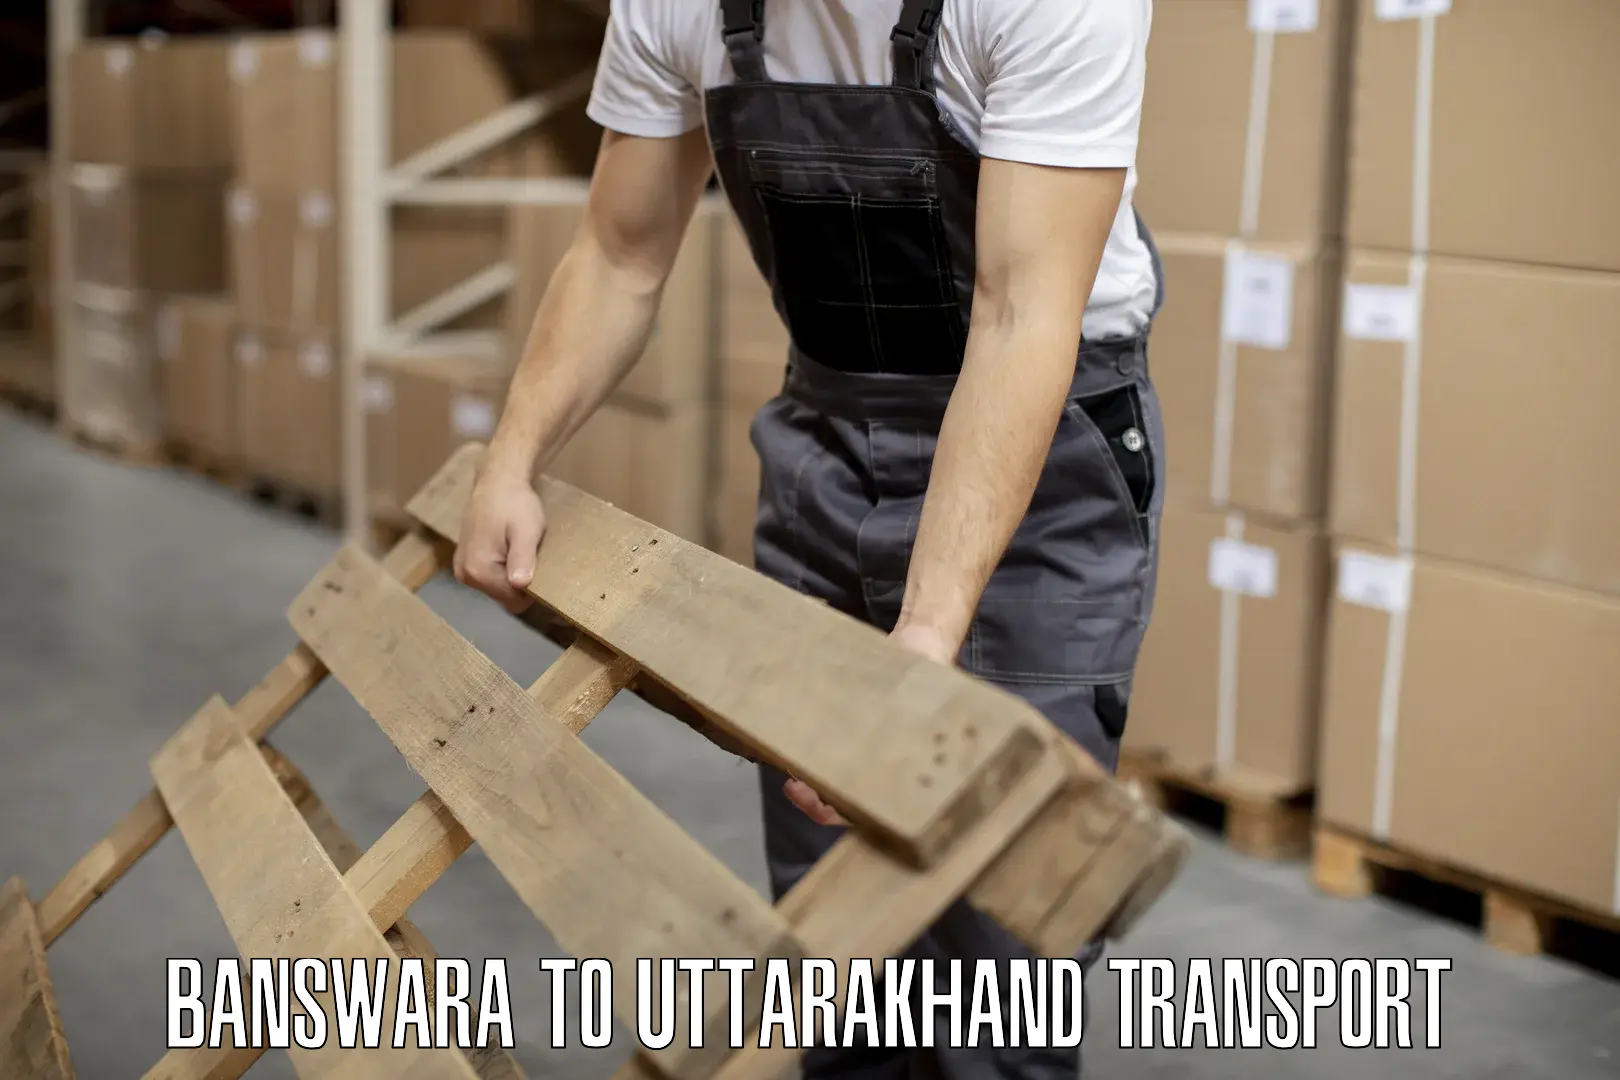 Furniture transport service Banswara to Paithani